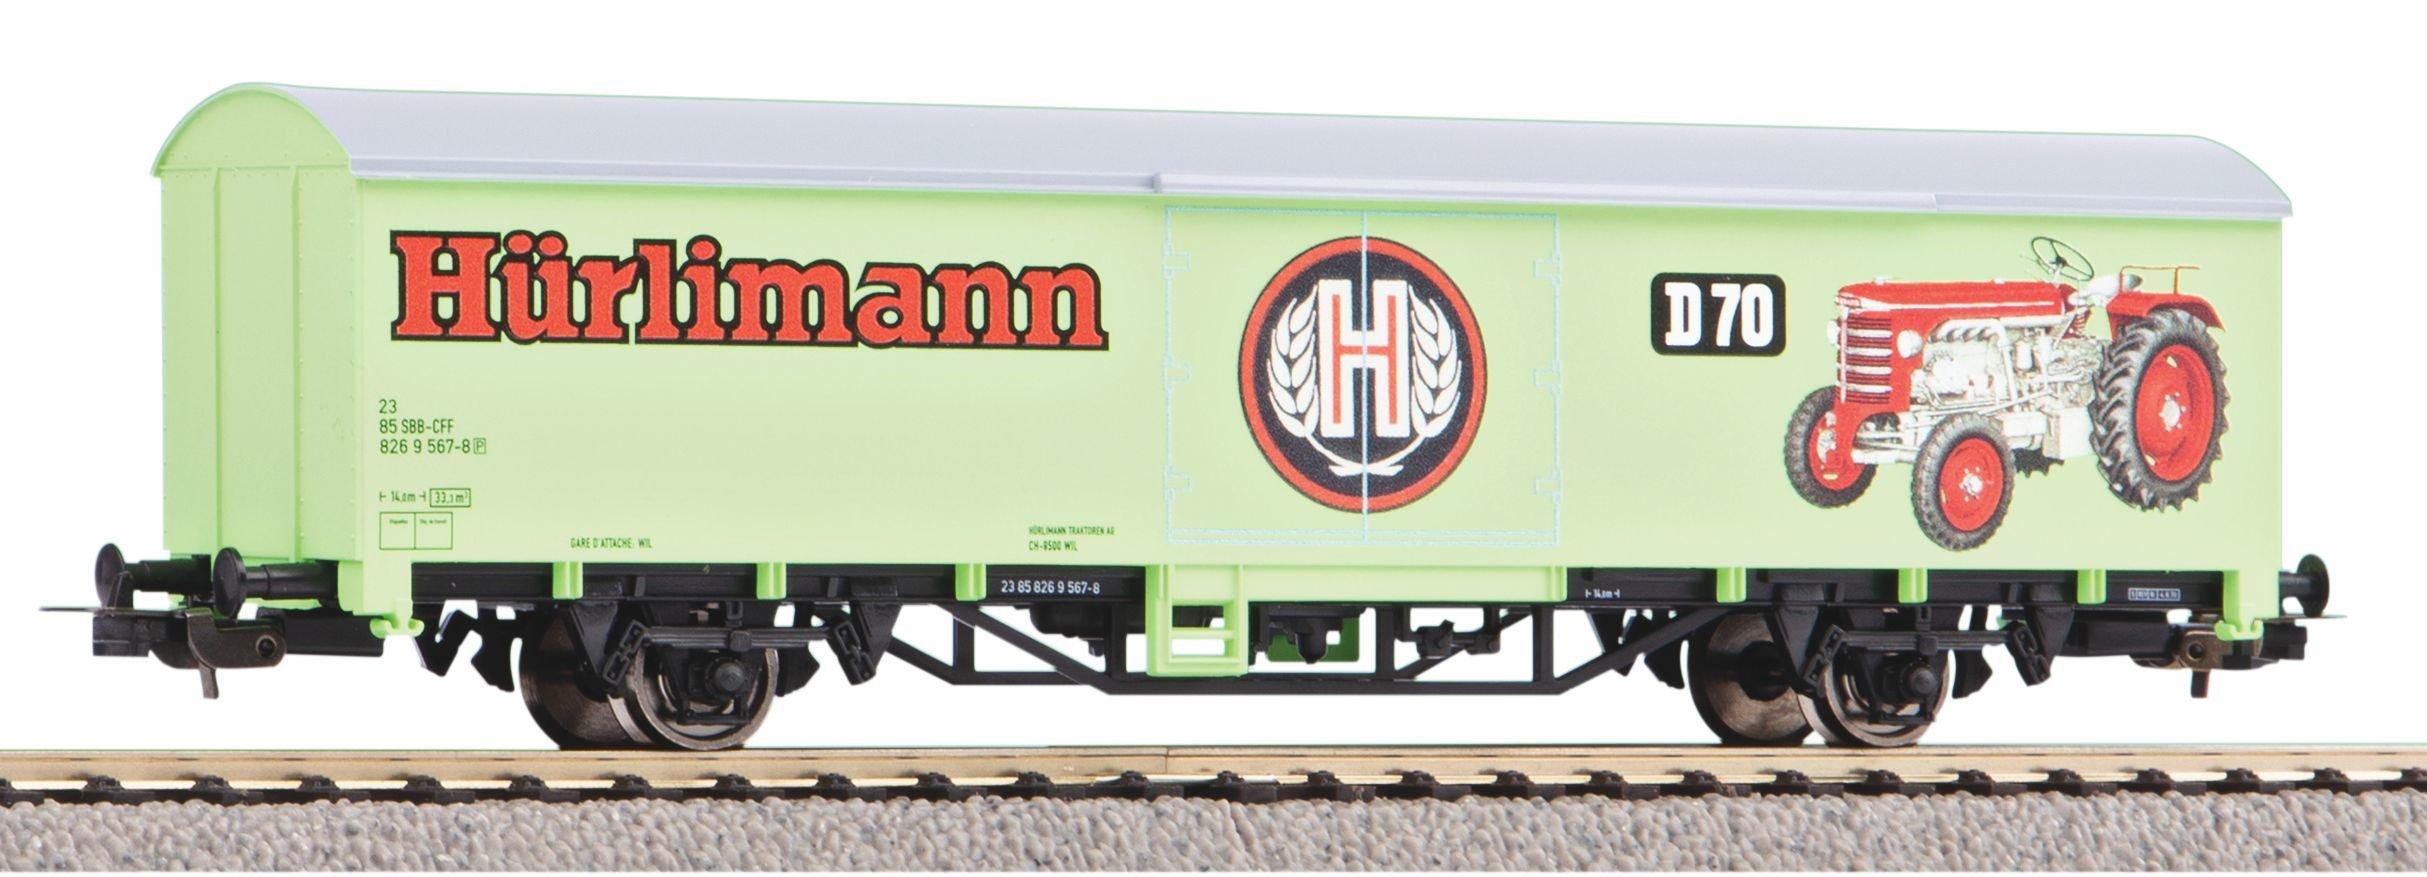 PIKO  PIKO 58799 modellino in scala Modello di treno Preassemblato HO (1:87) 